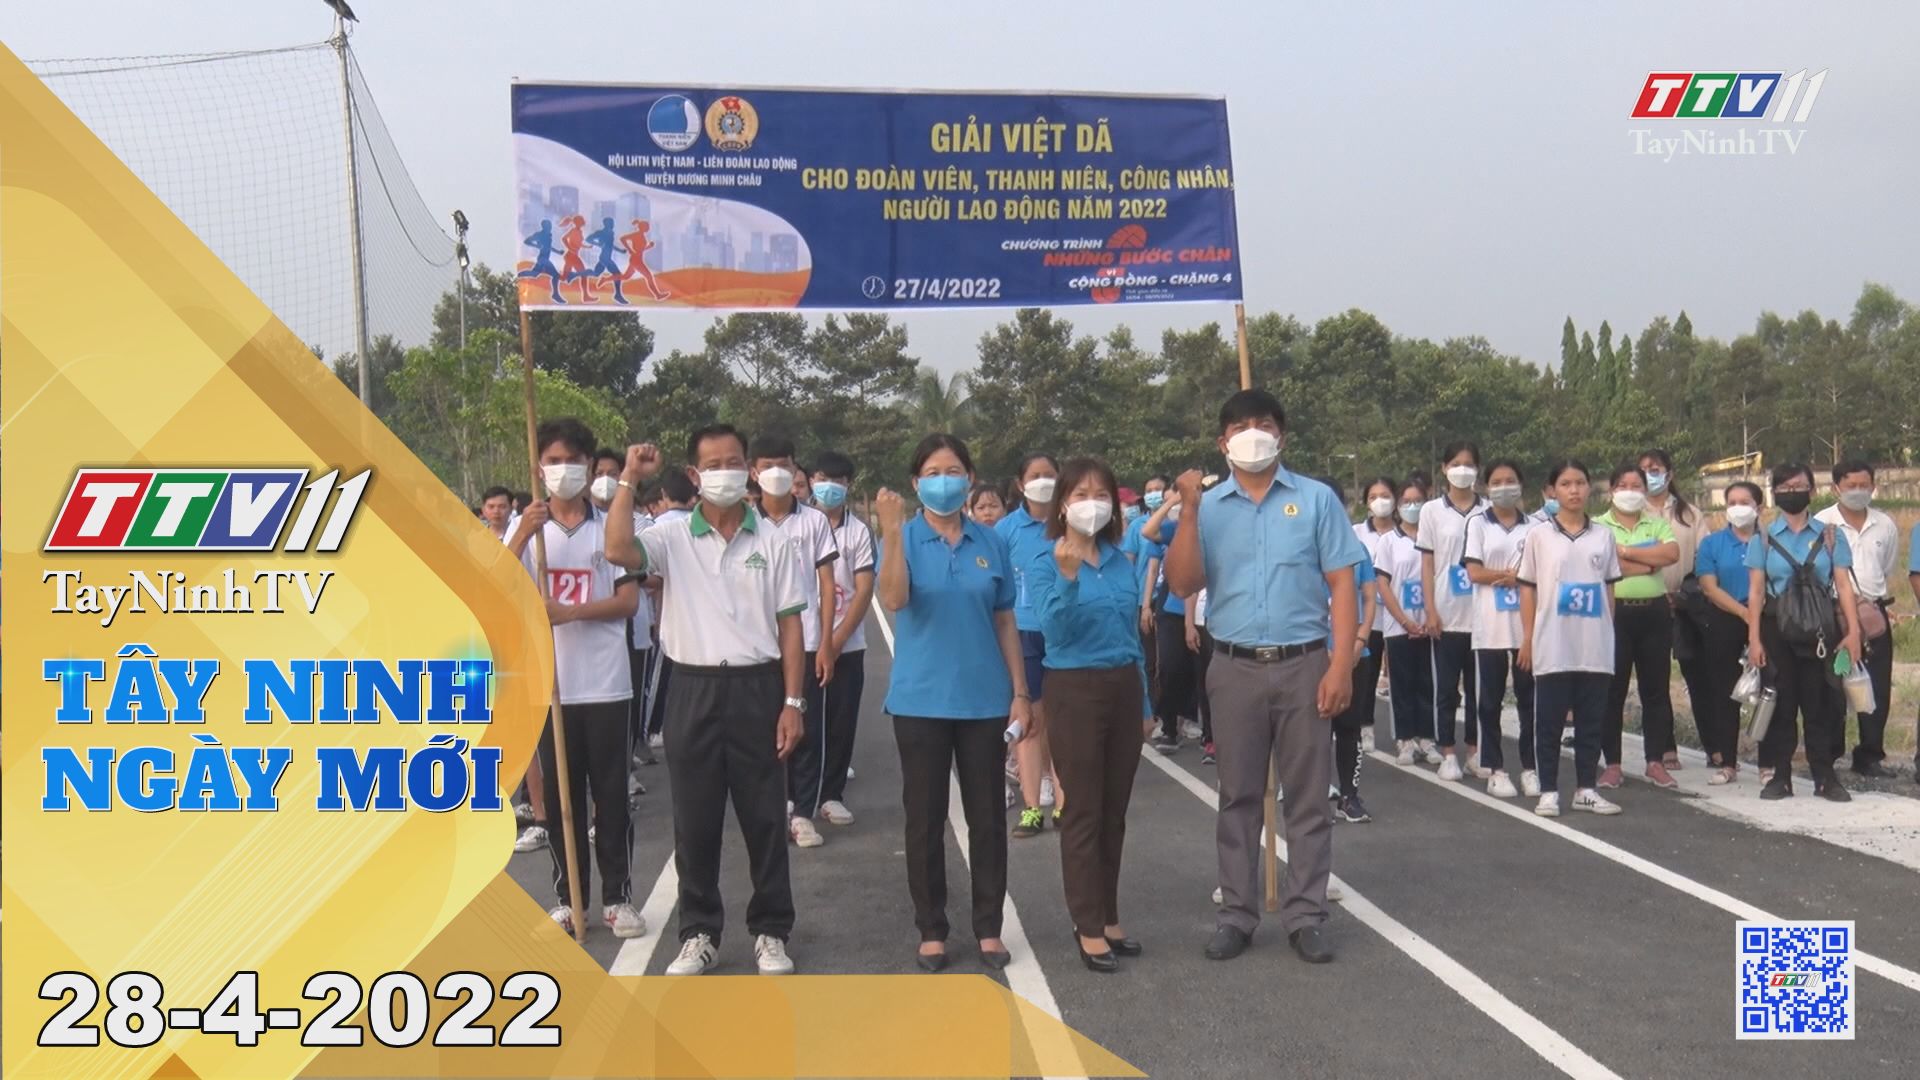 Tây Ninh ngày mới 28-4-2022 | Tin tức hôm nay | TayNinhTV